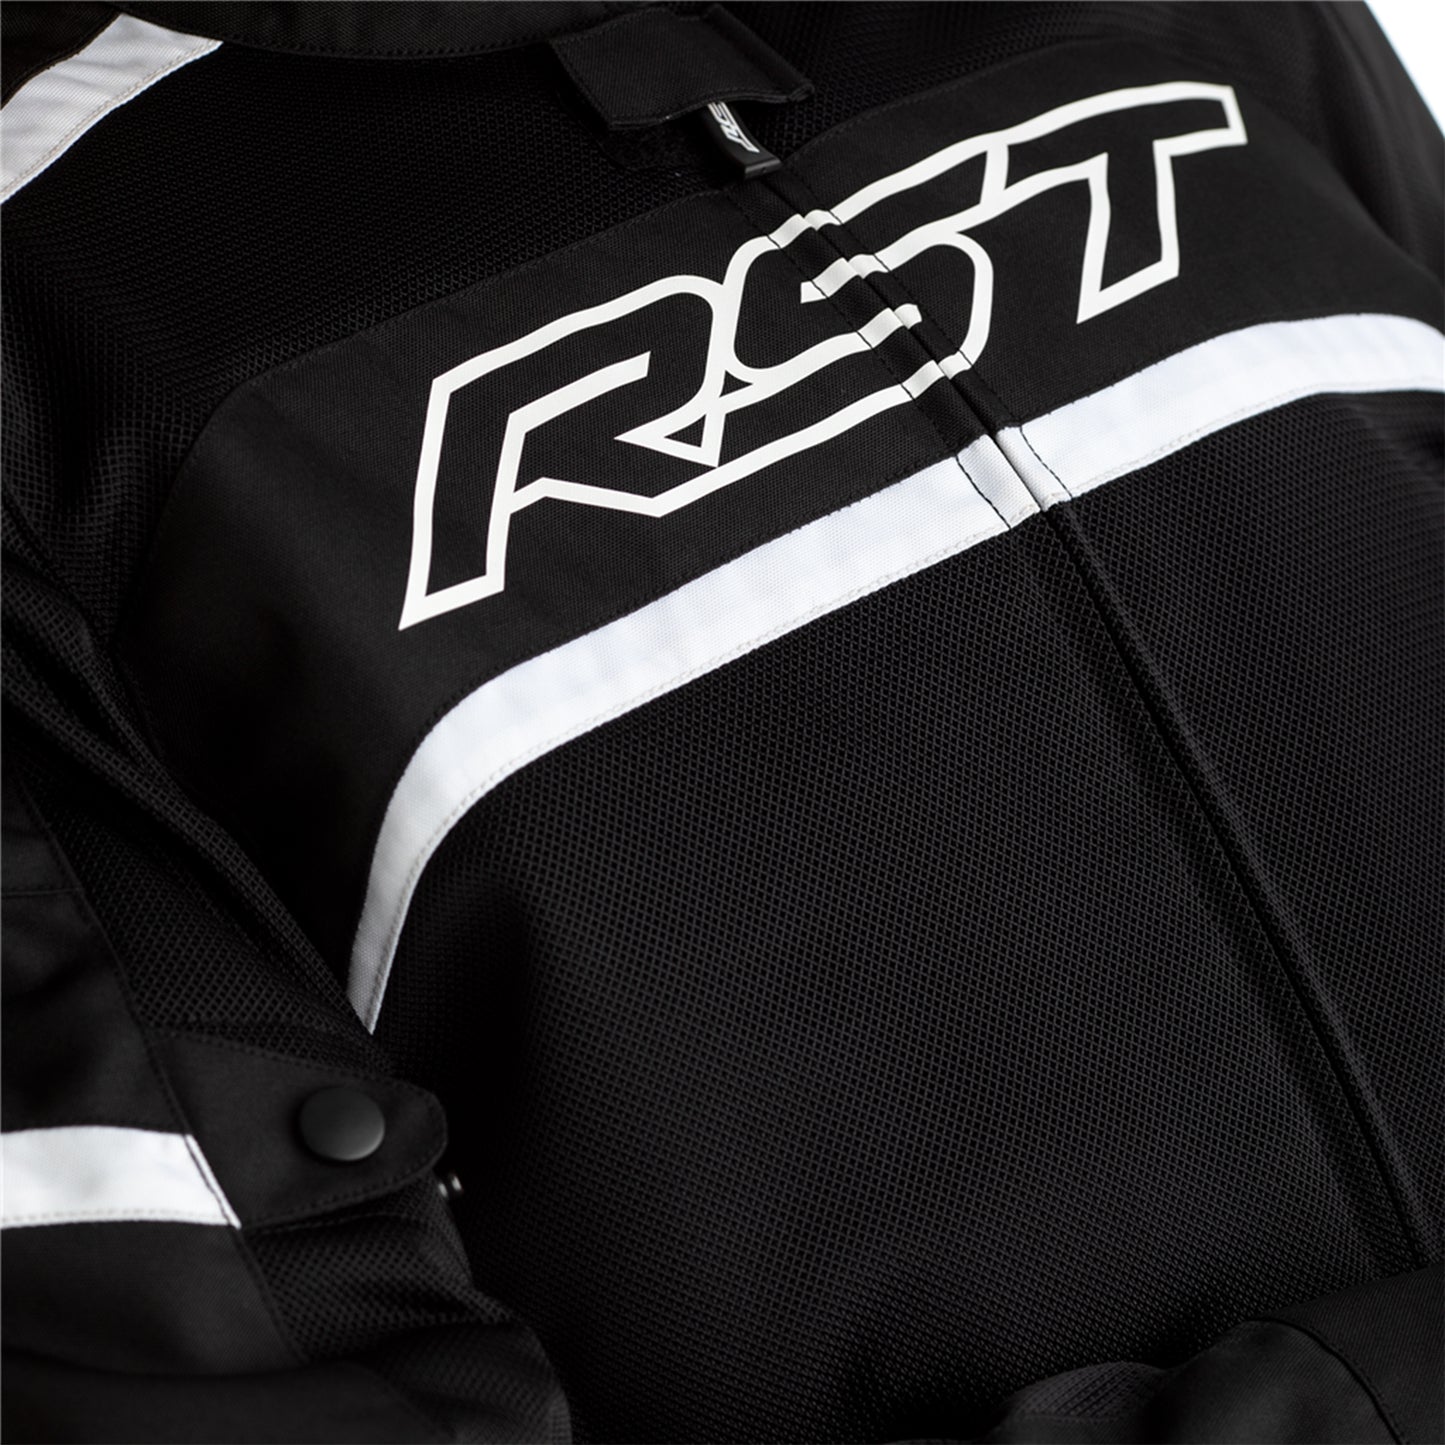 RST Pilot Air CE Men's Waterproof Textile Jacket - Black / White (2408)